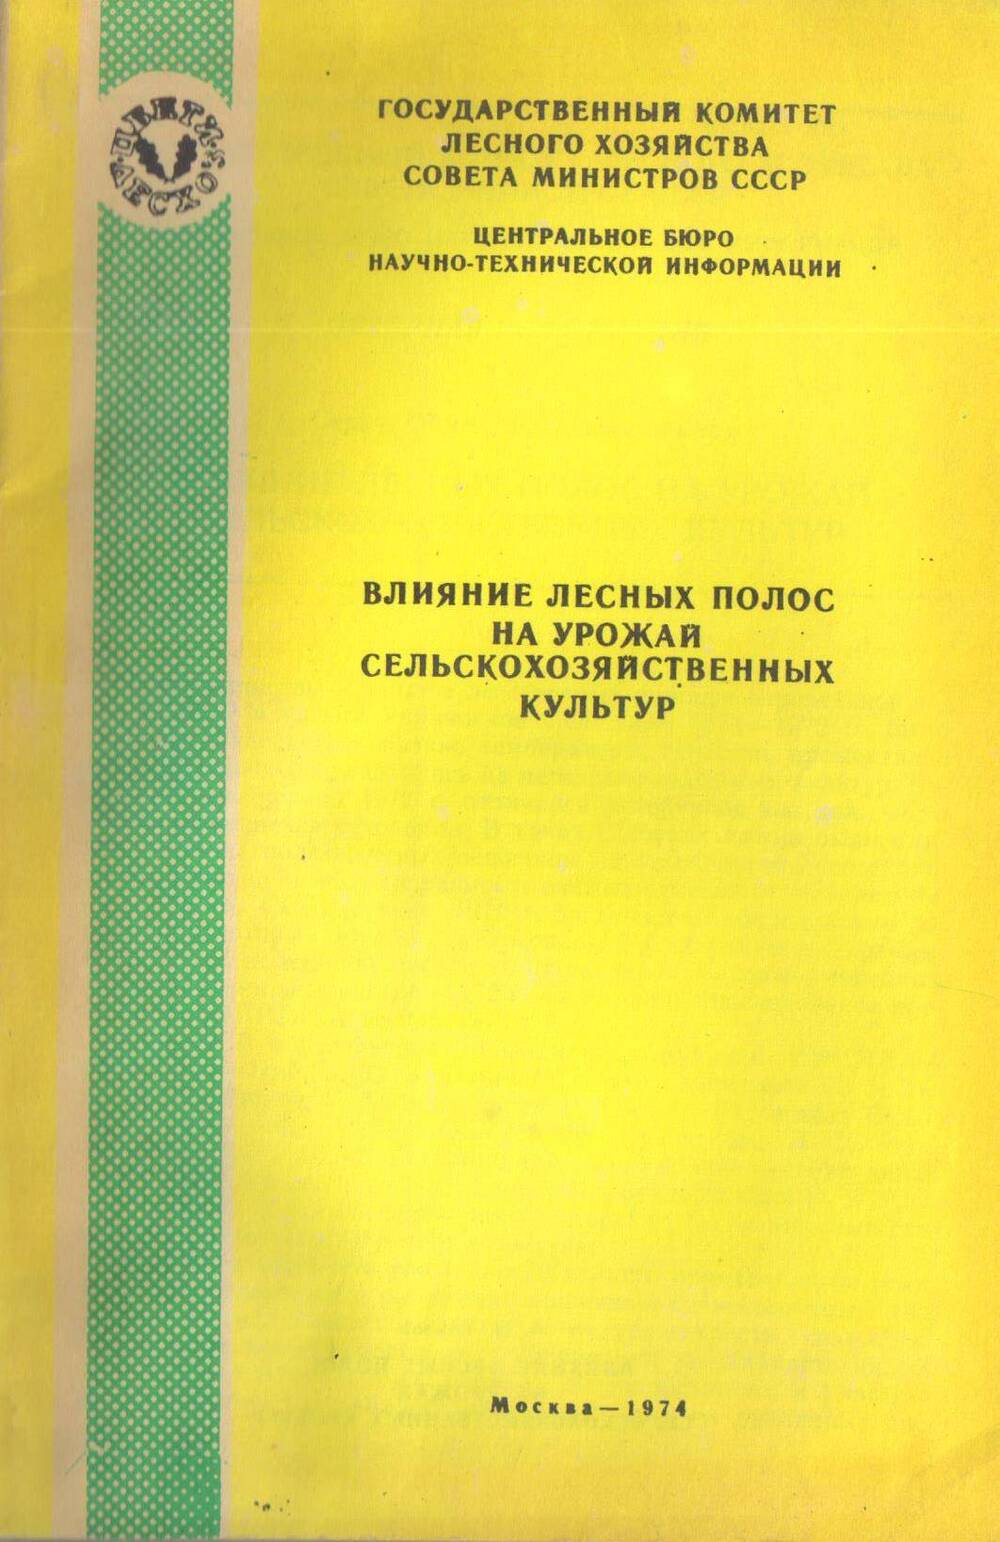 А.Н. Павлов. Влияние лесных полос на урожай сельскохозяйственных культур. Москва - 1974